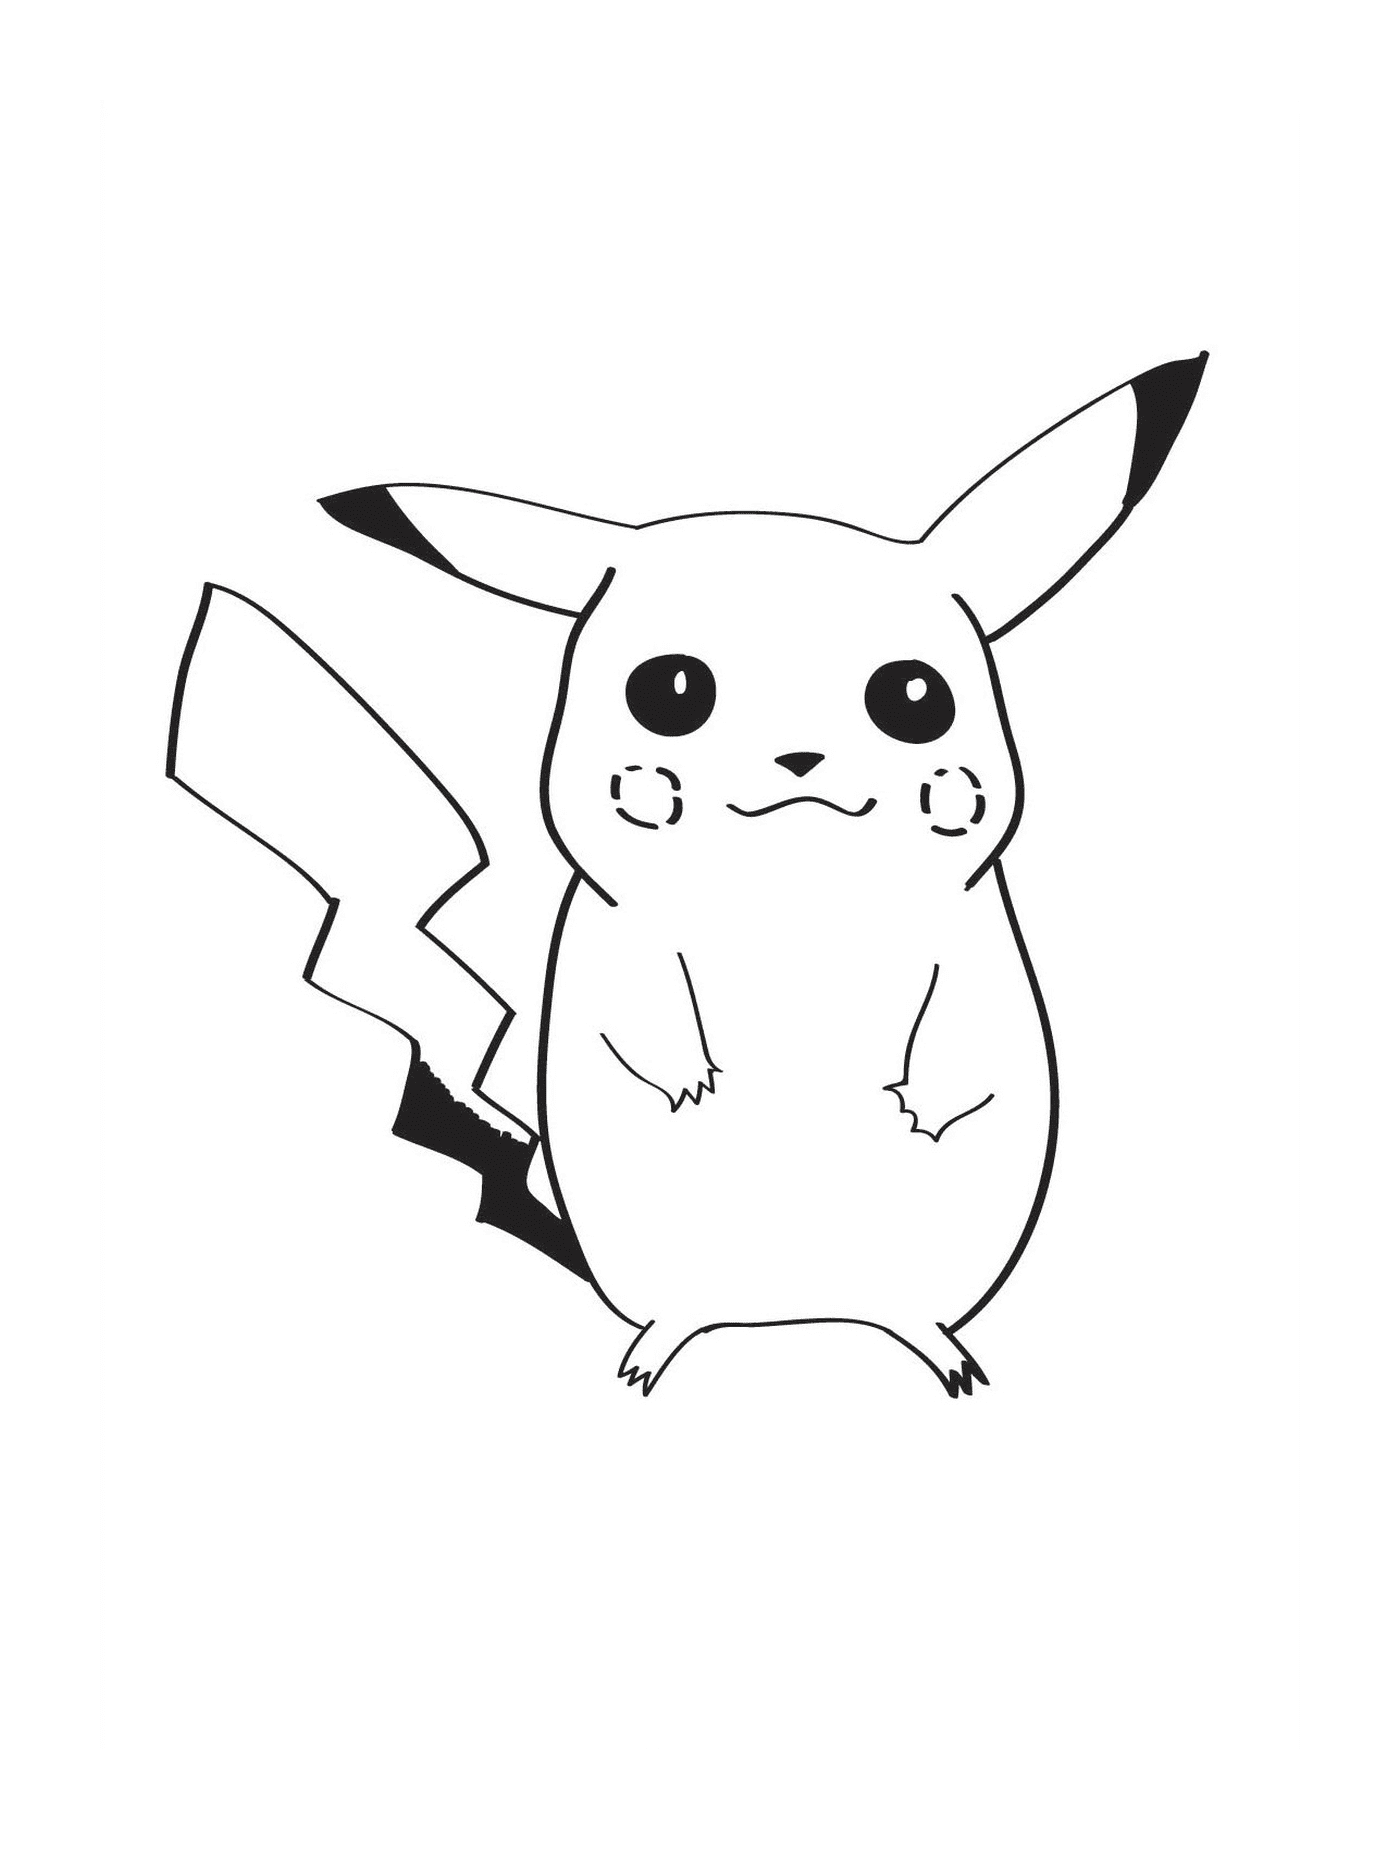  Pikachu, entzückende kleine Kreatur 